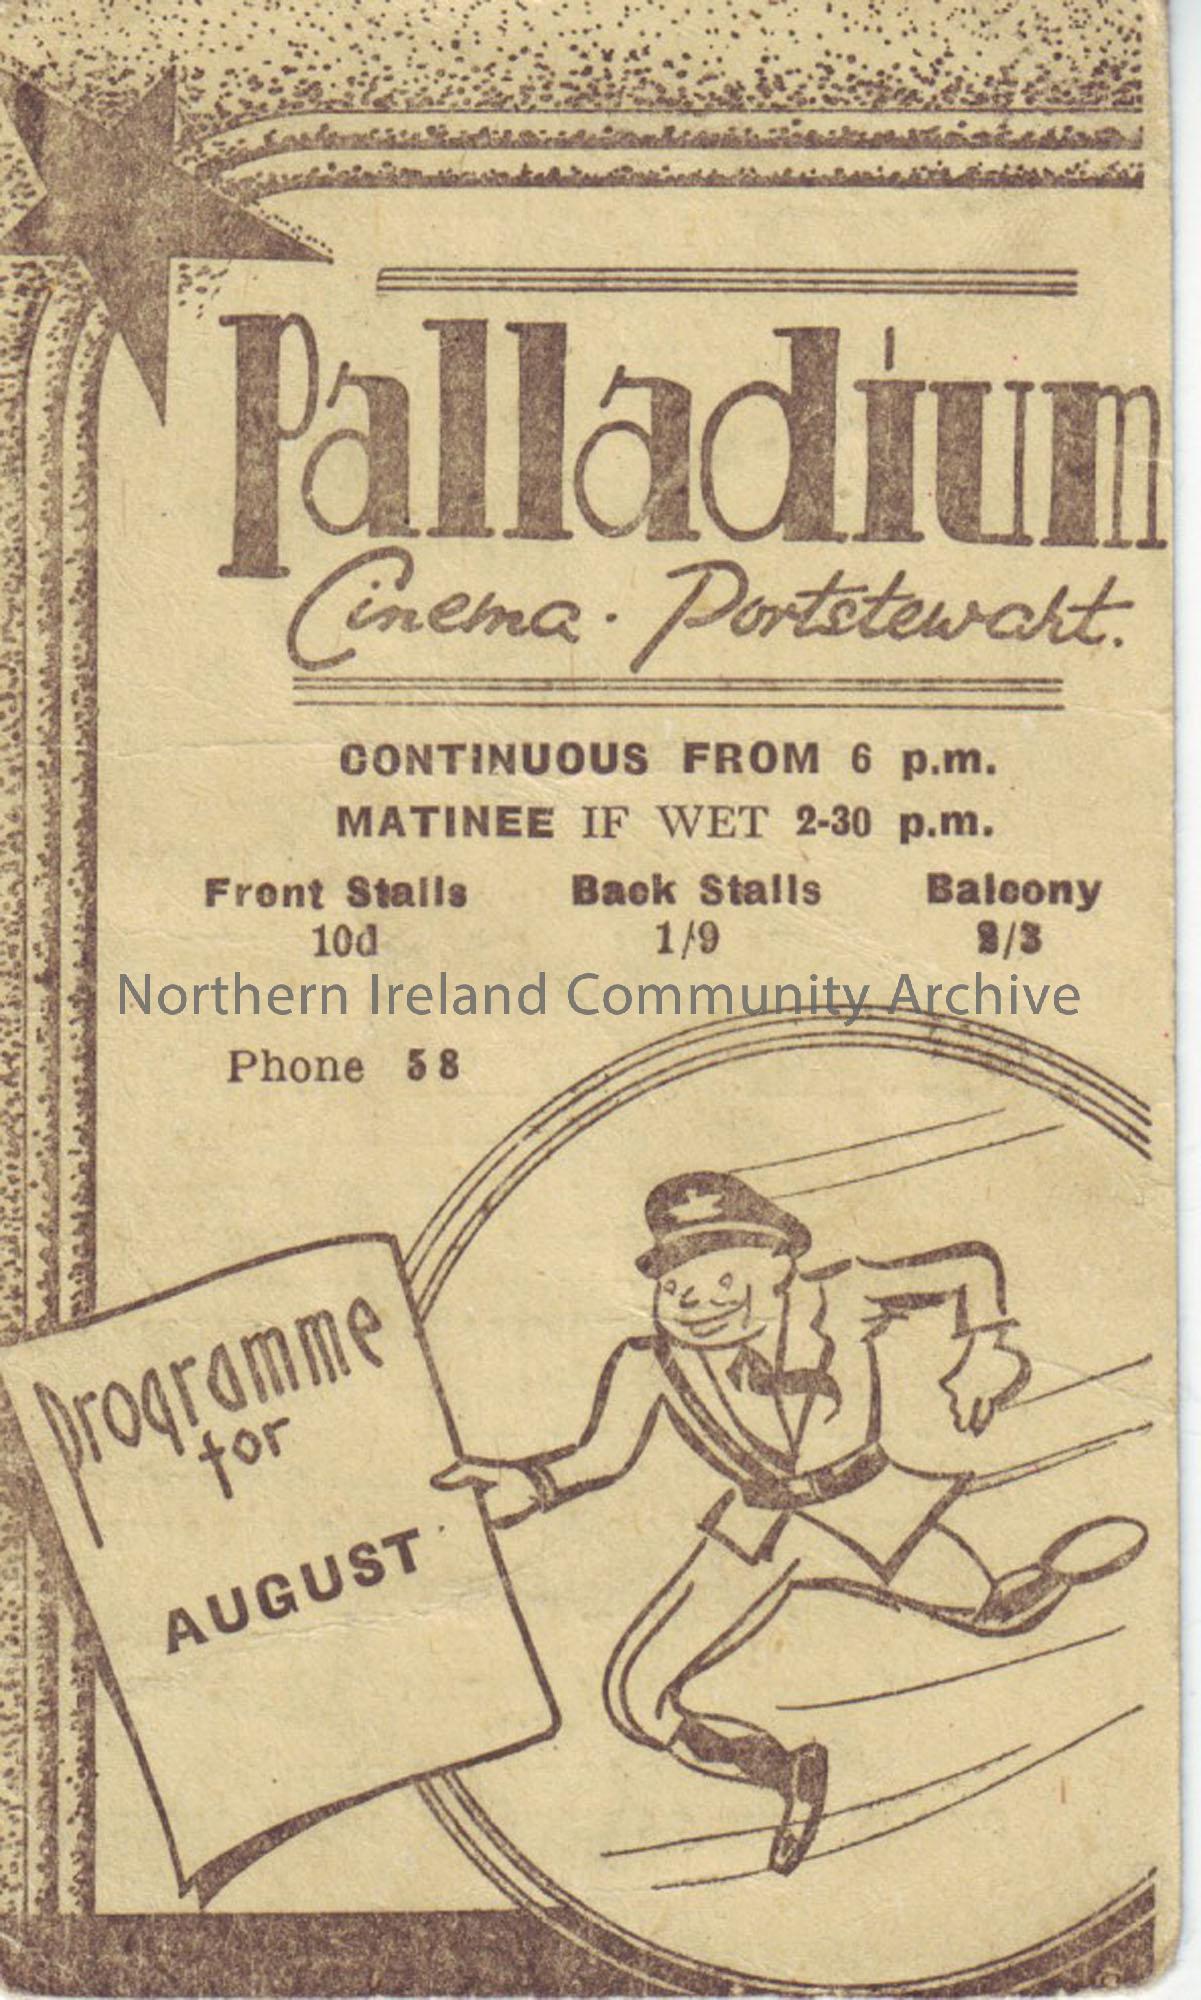 cream monthly programme for Portstewart Palladium cinema August